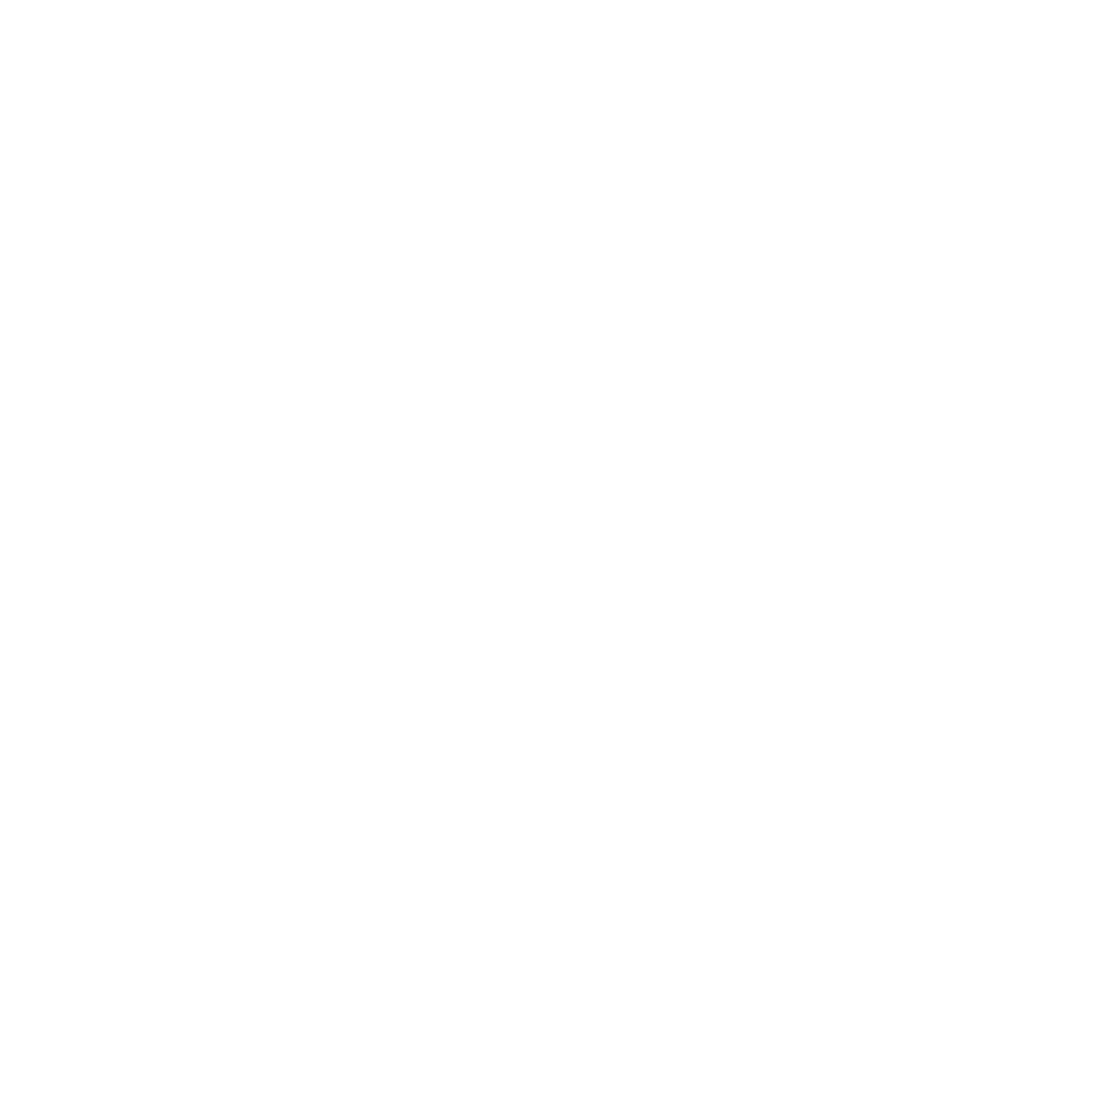 スマホ版モーション画像の上にのるK-Lounge 長野のロゴ